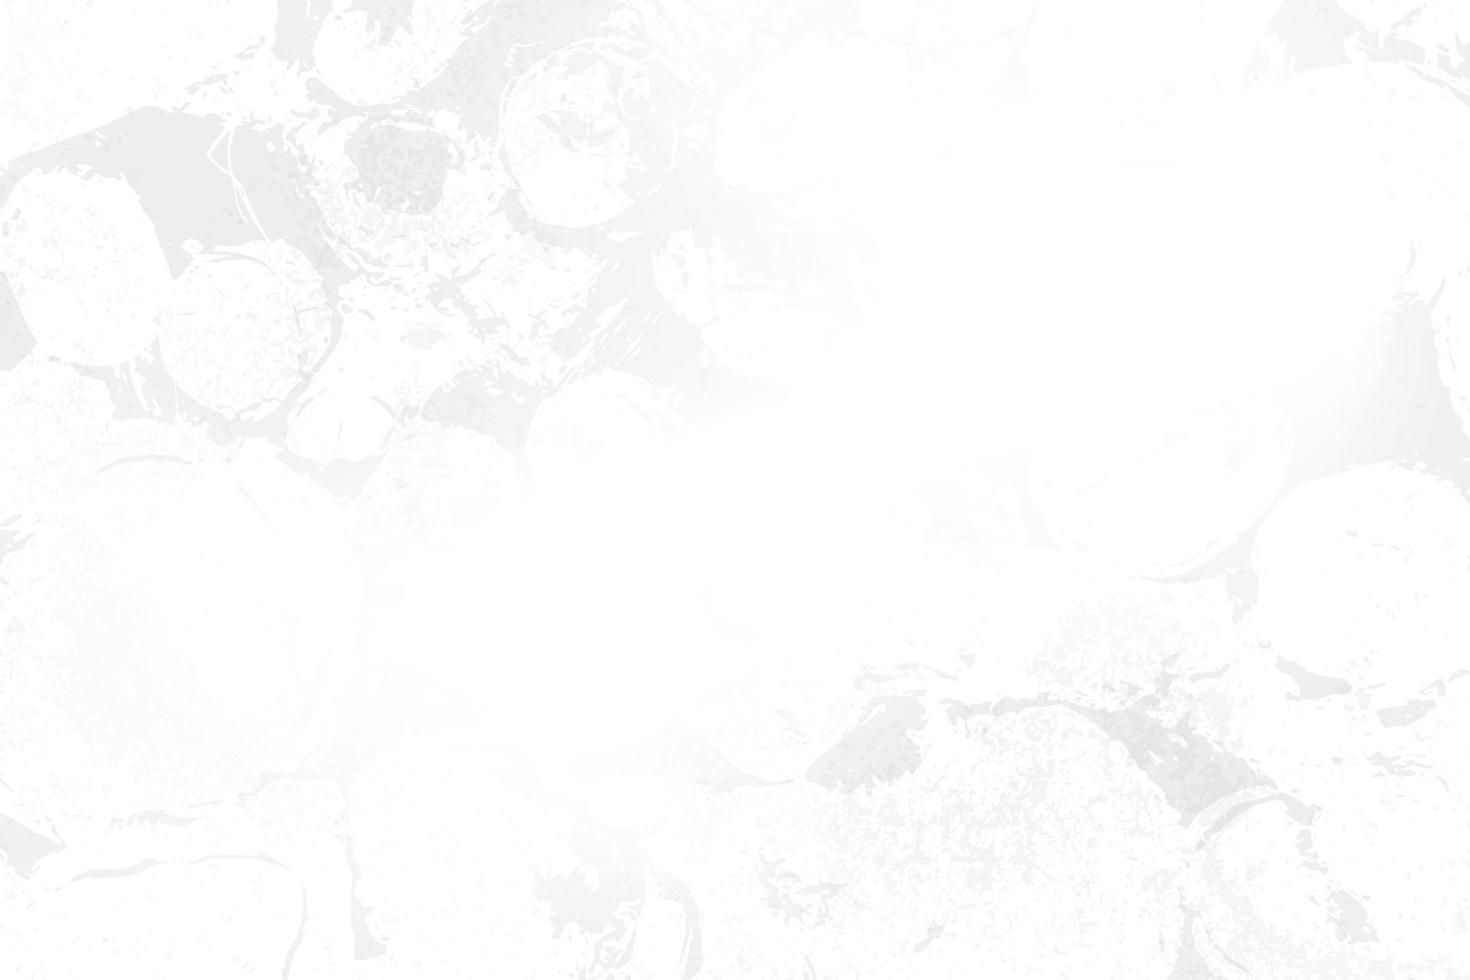 fond grunge abstrait couleur blanche et grise avec un style rétro. illustration vectorielle. vecteur